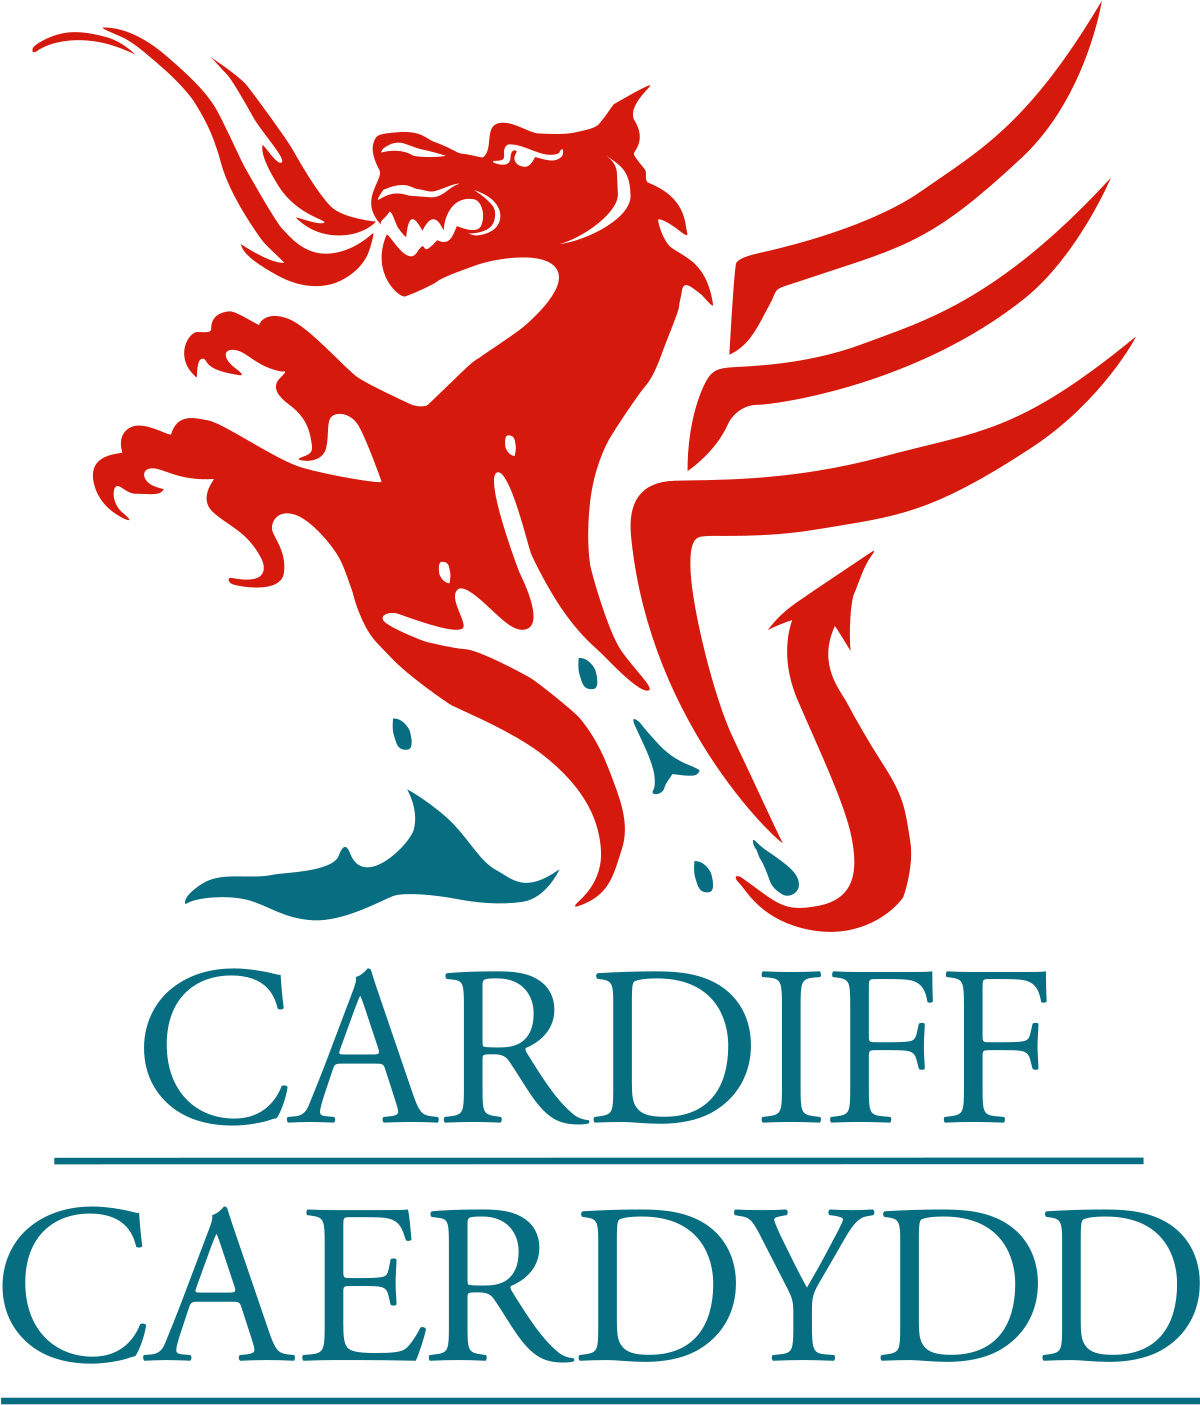 cardiff cc logo